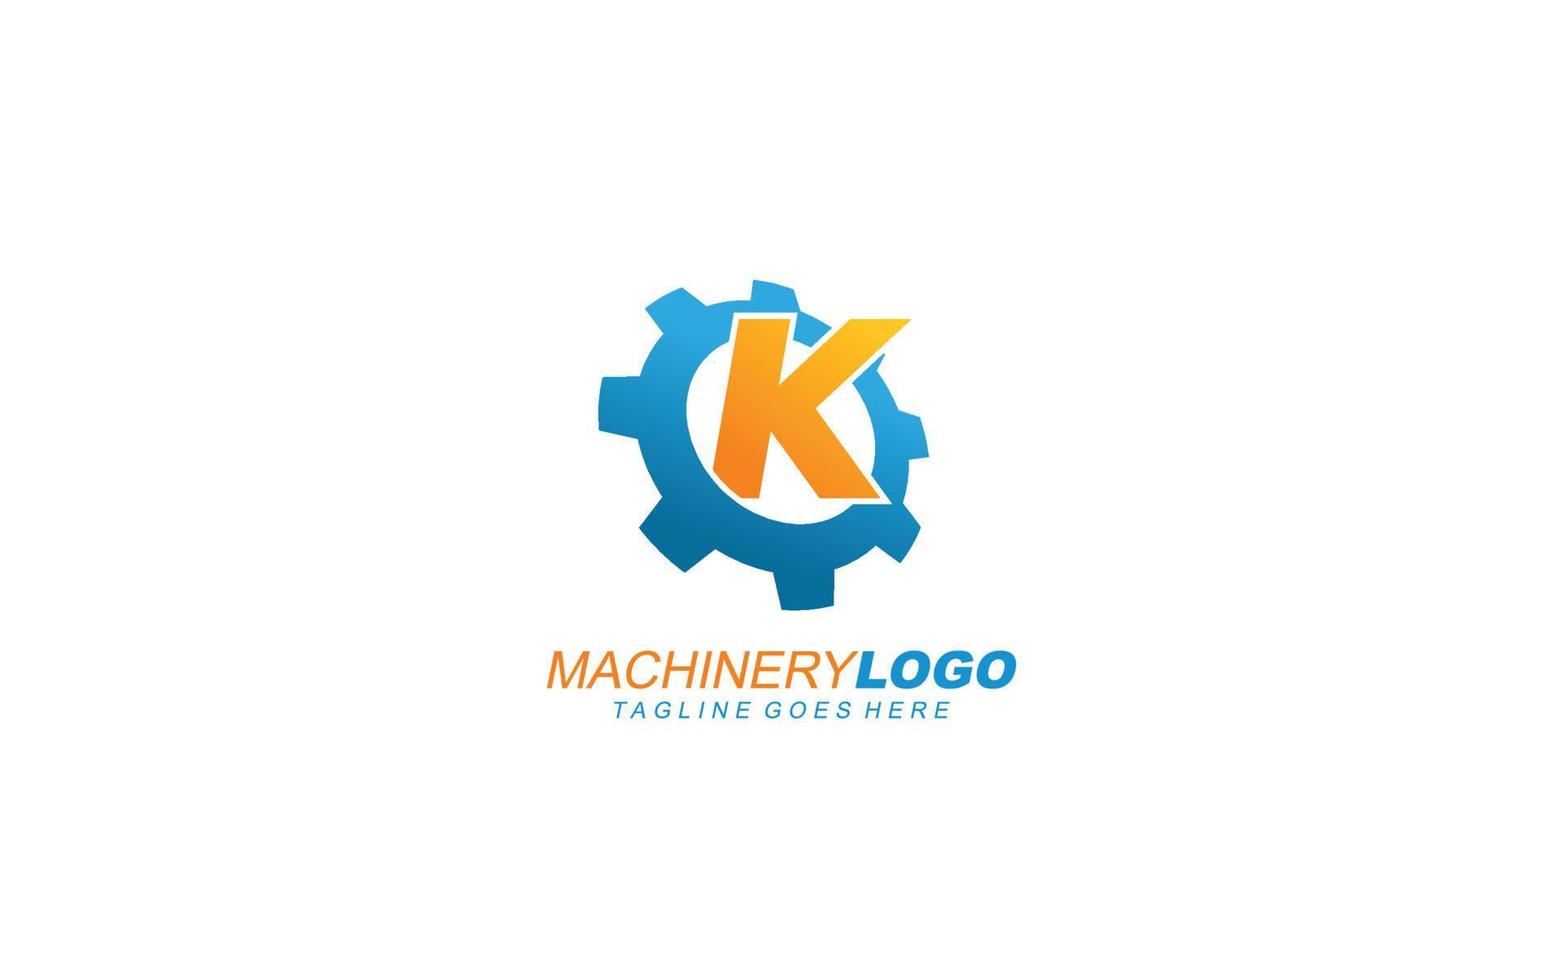 k engrenagem do logotipo para identidade. ilustração em vetor modelo industrial para sua marca.